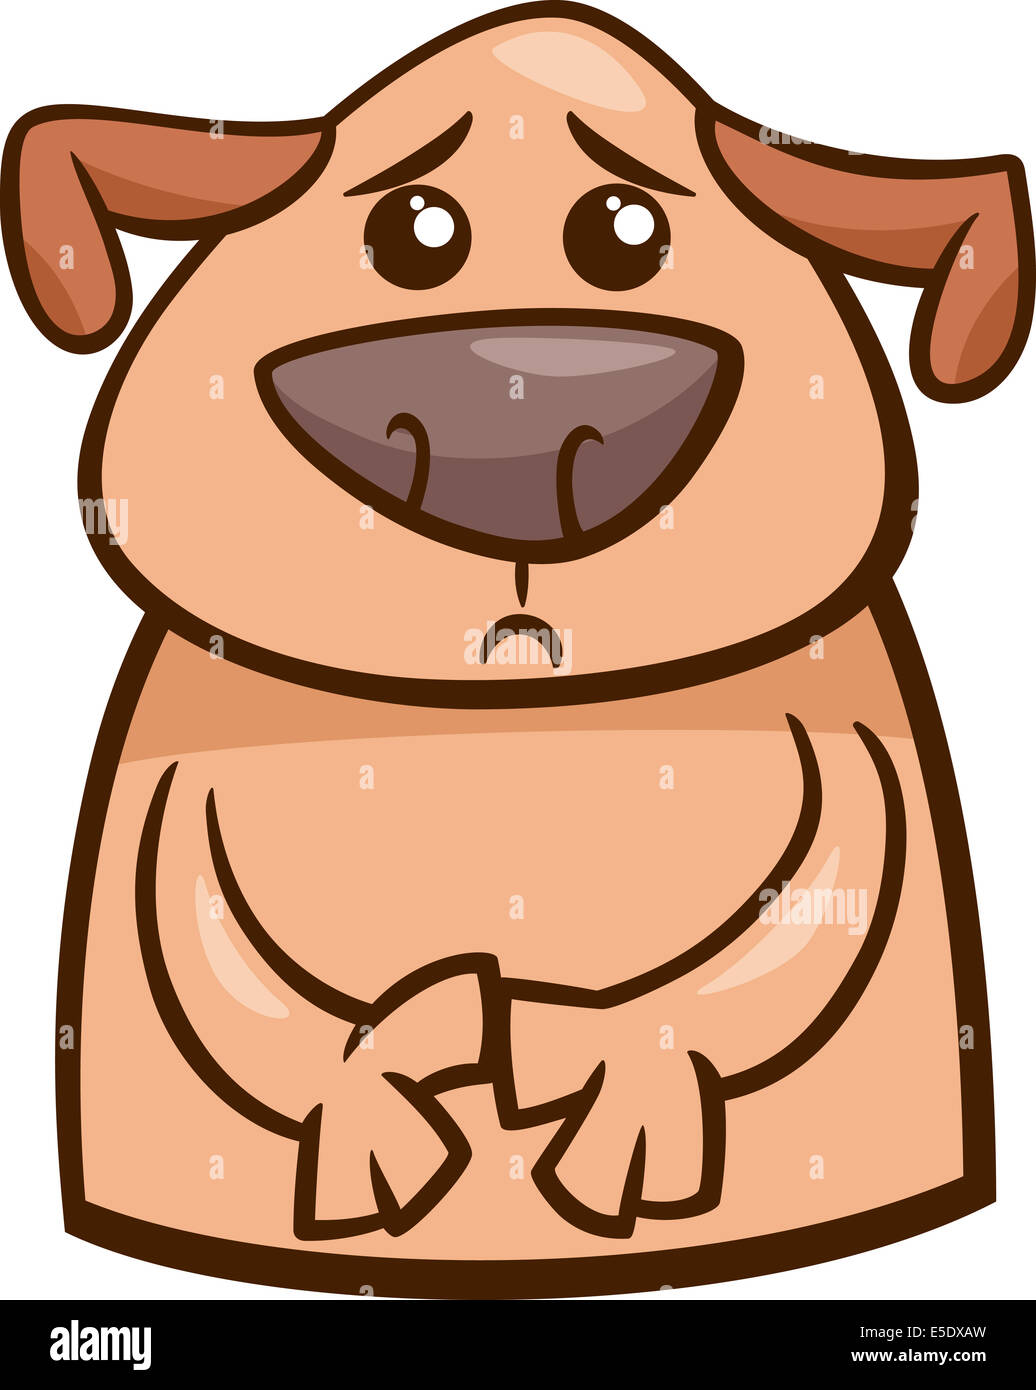 Cartoon Illustration of Funny Dog Expressing Sad Mood or Emotion Stock Photo